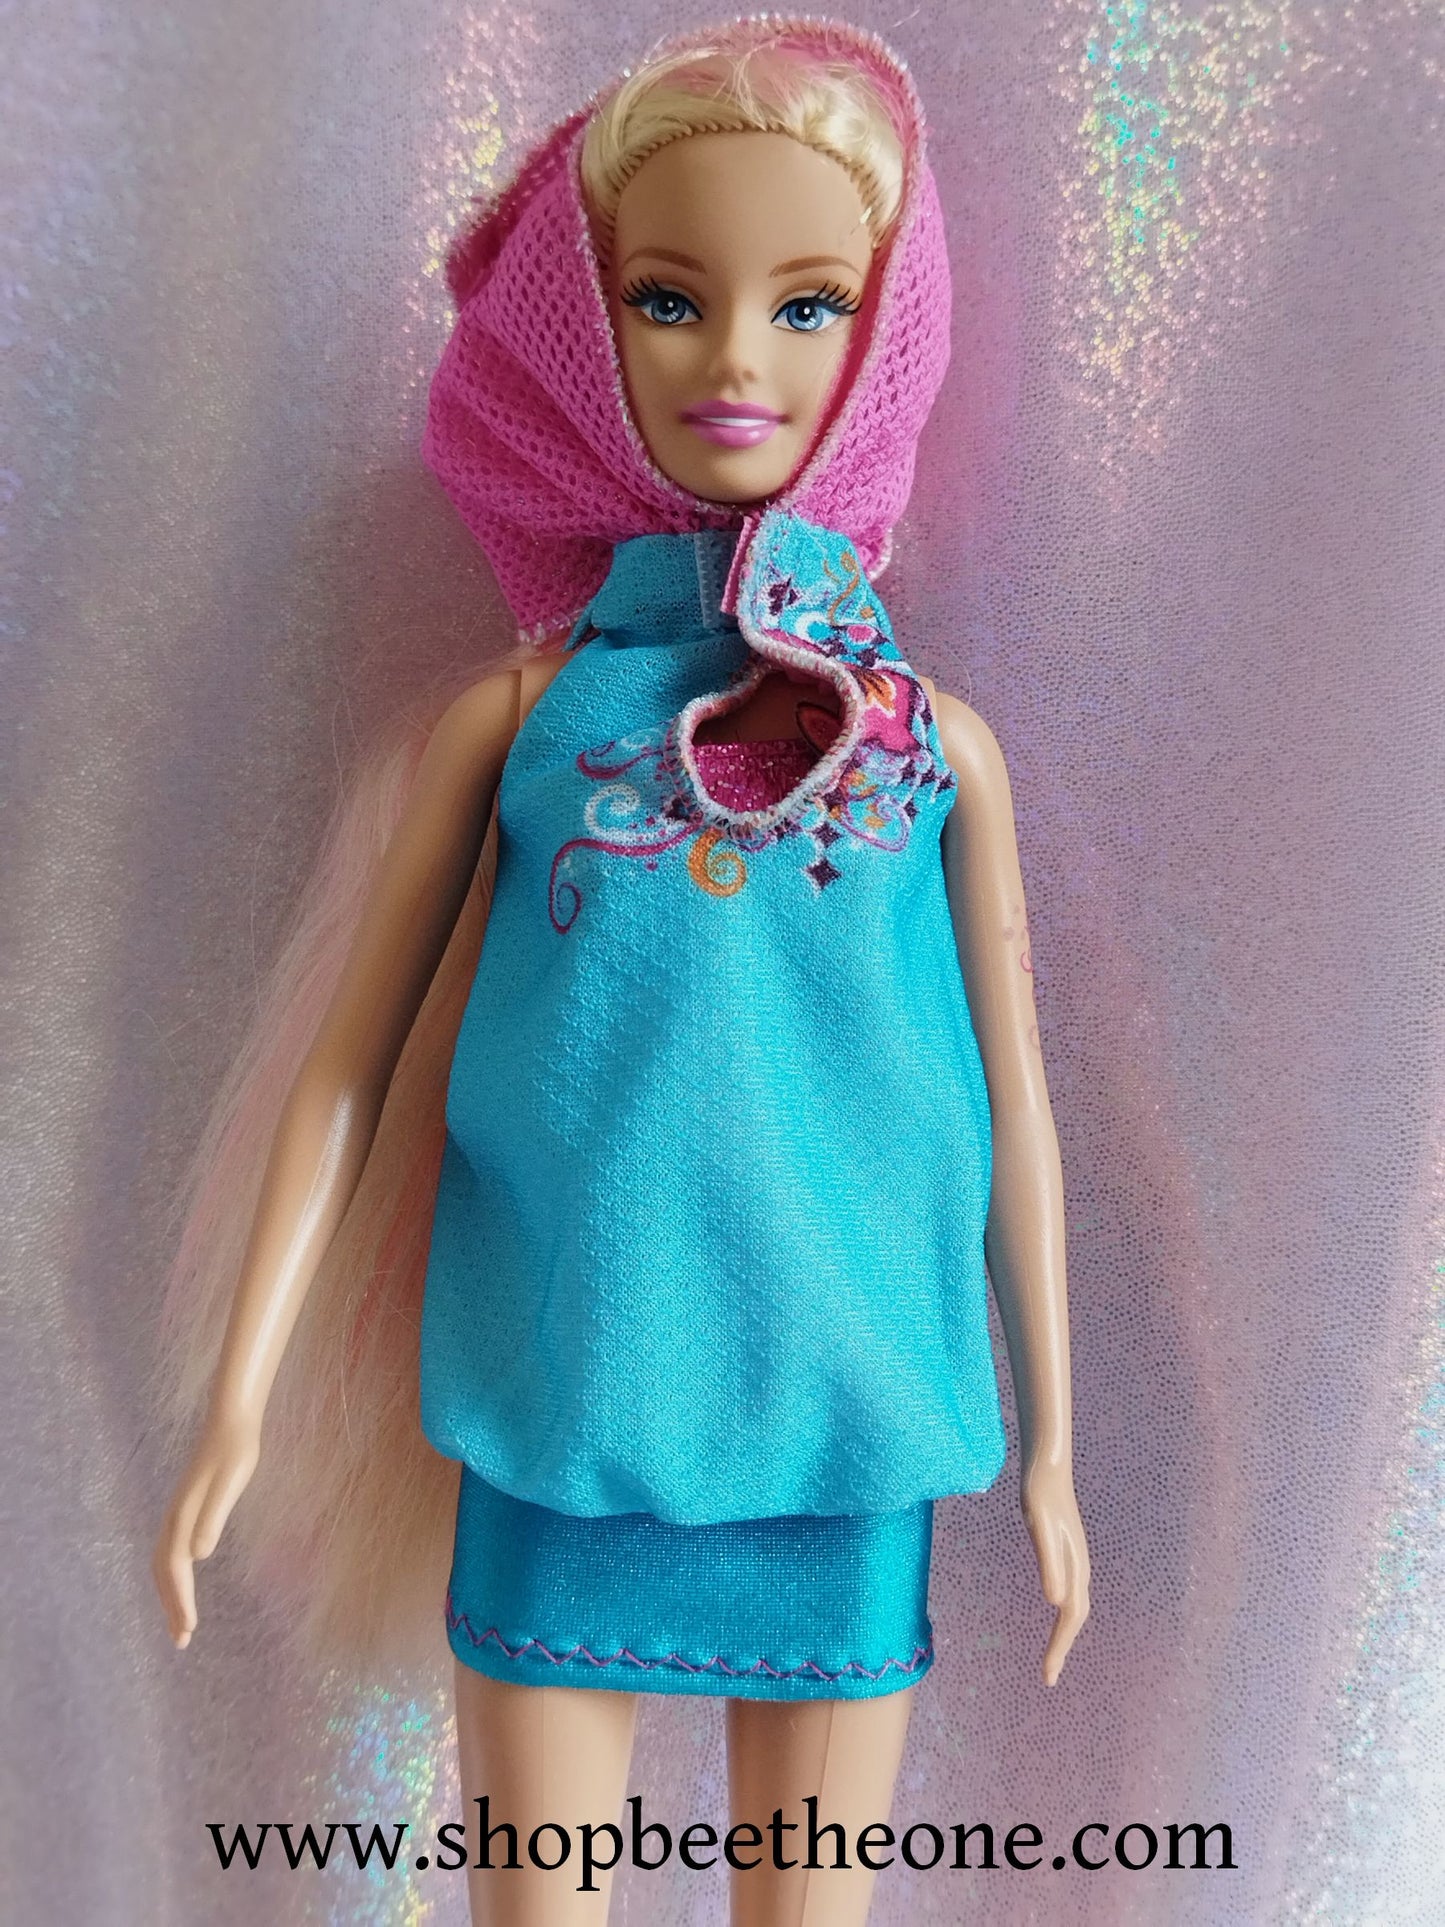 Barbie et le Secret des Sirènes (A Mermaid tale) - Merliah Bath Play Fun 2-en-1 - Mattel 2010 - Poupée - Vêtements